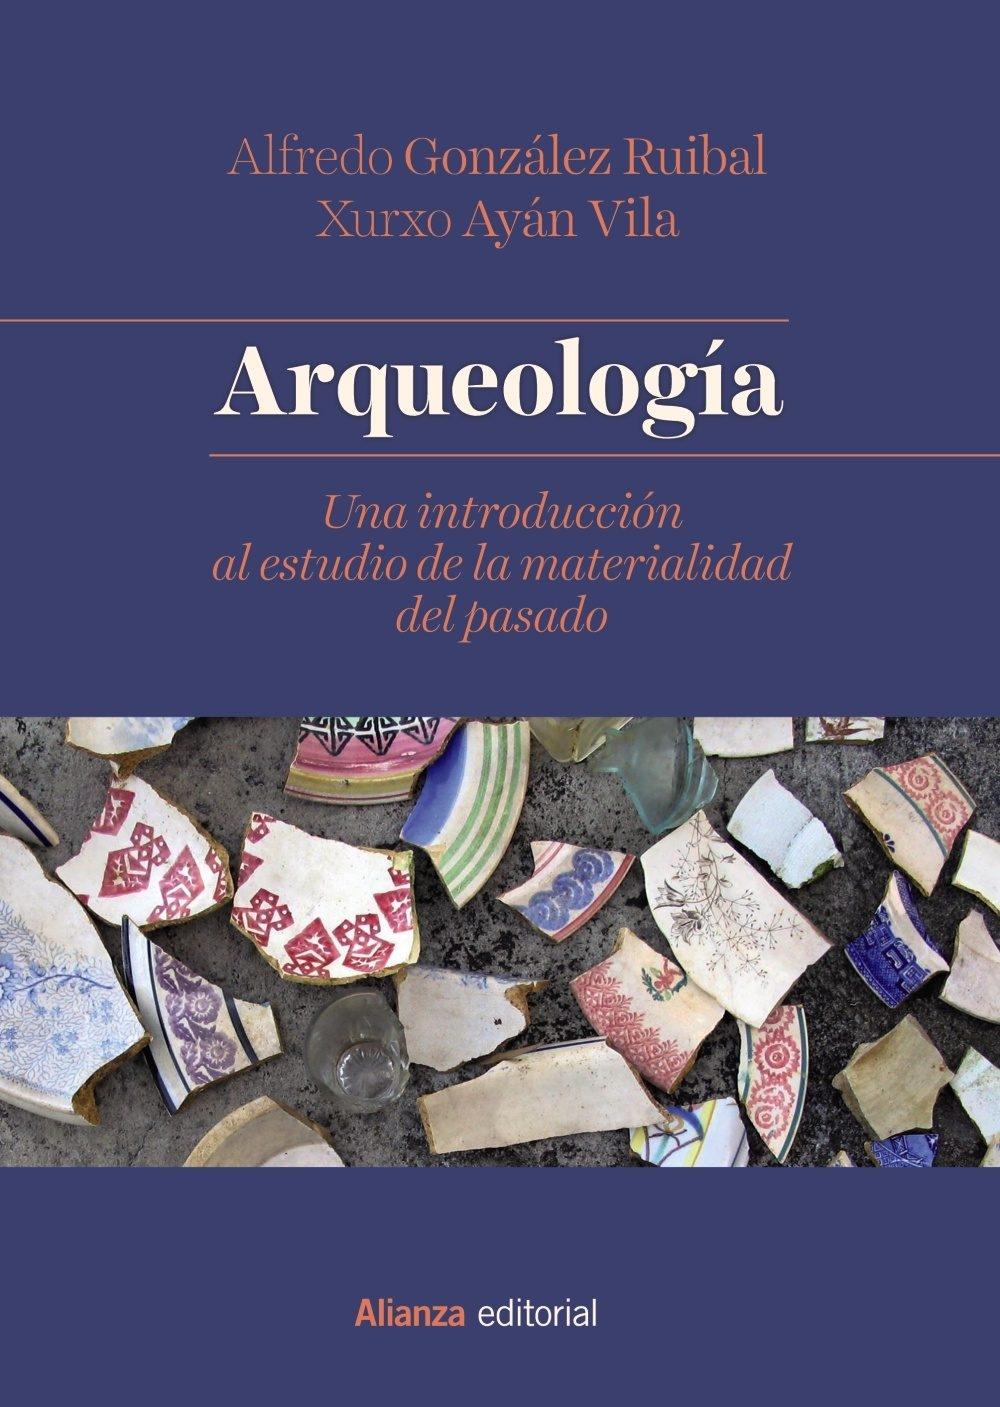 Arqueología "Una introducción al estudio de la materialidad del pasado". 